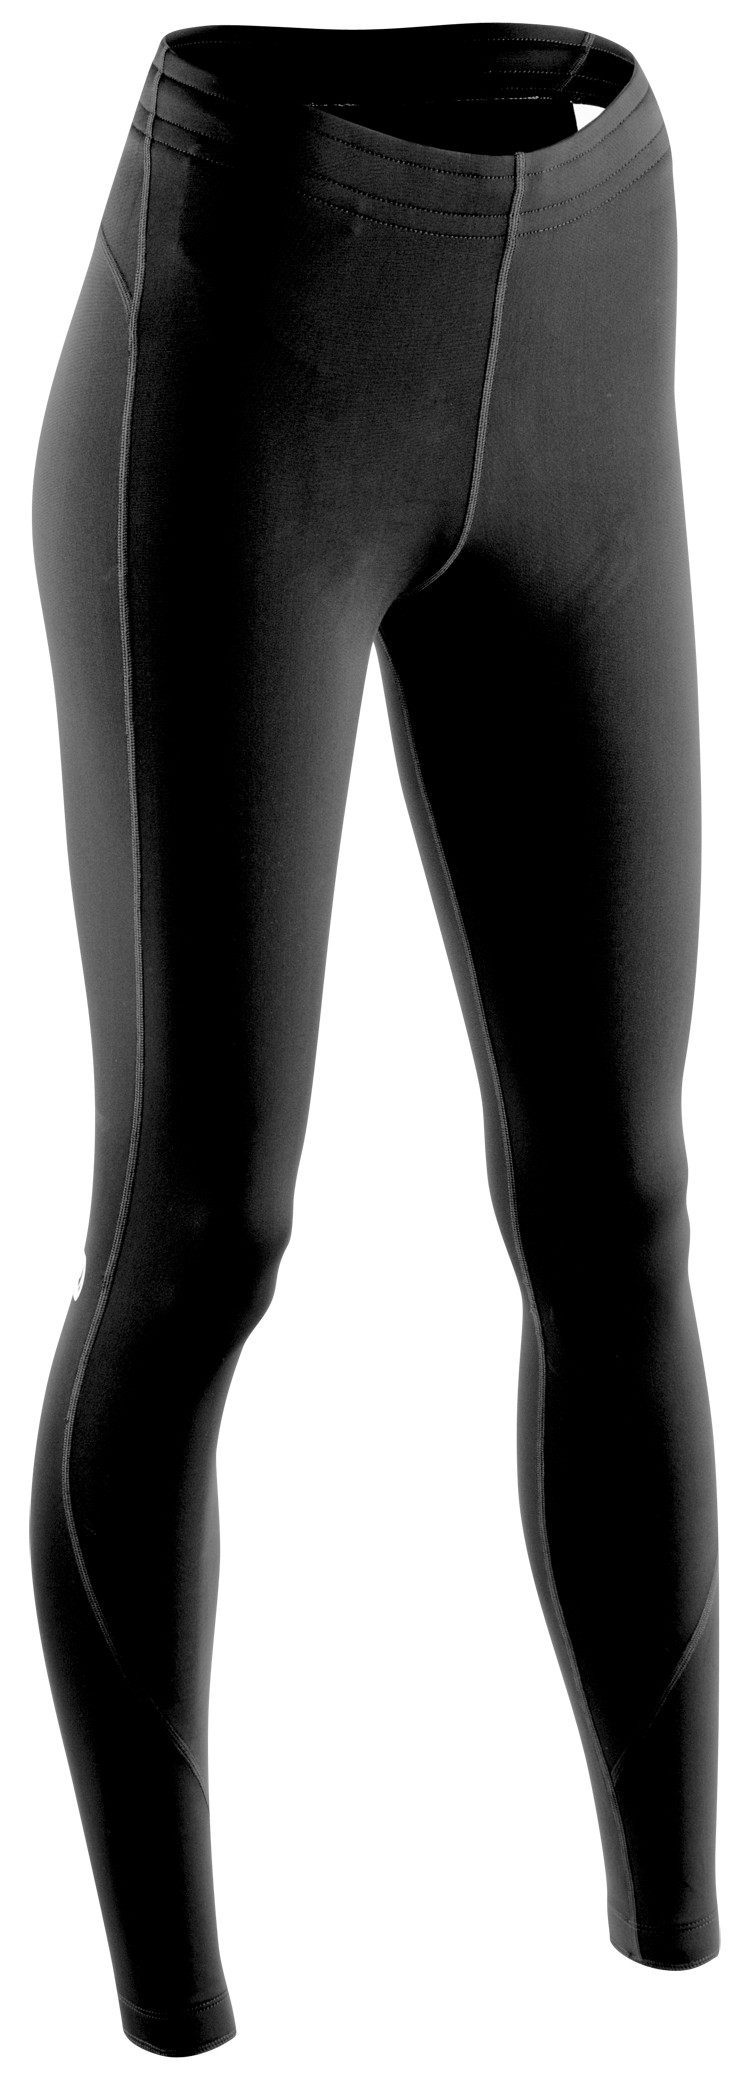 Рейтузи Sugoi Linear MIDZERO TIGHT, жіночі, gunmetal/black (сіро-чорні), XS фото 